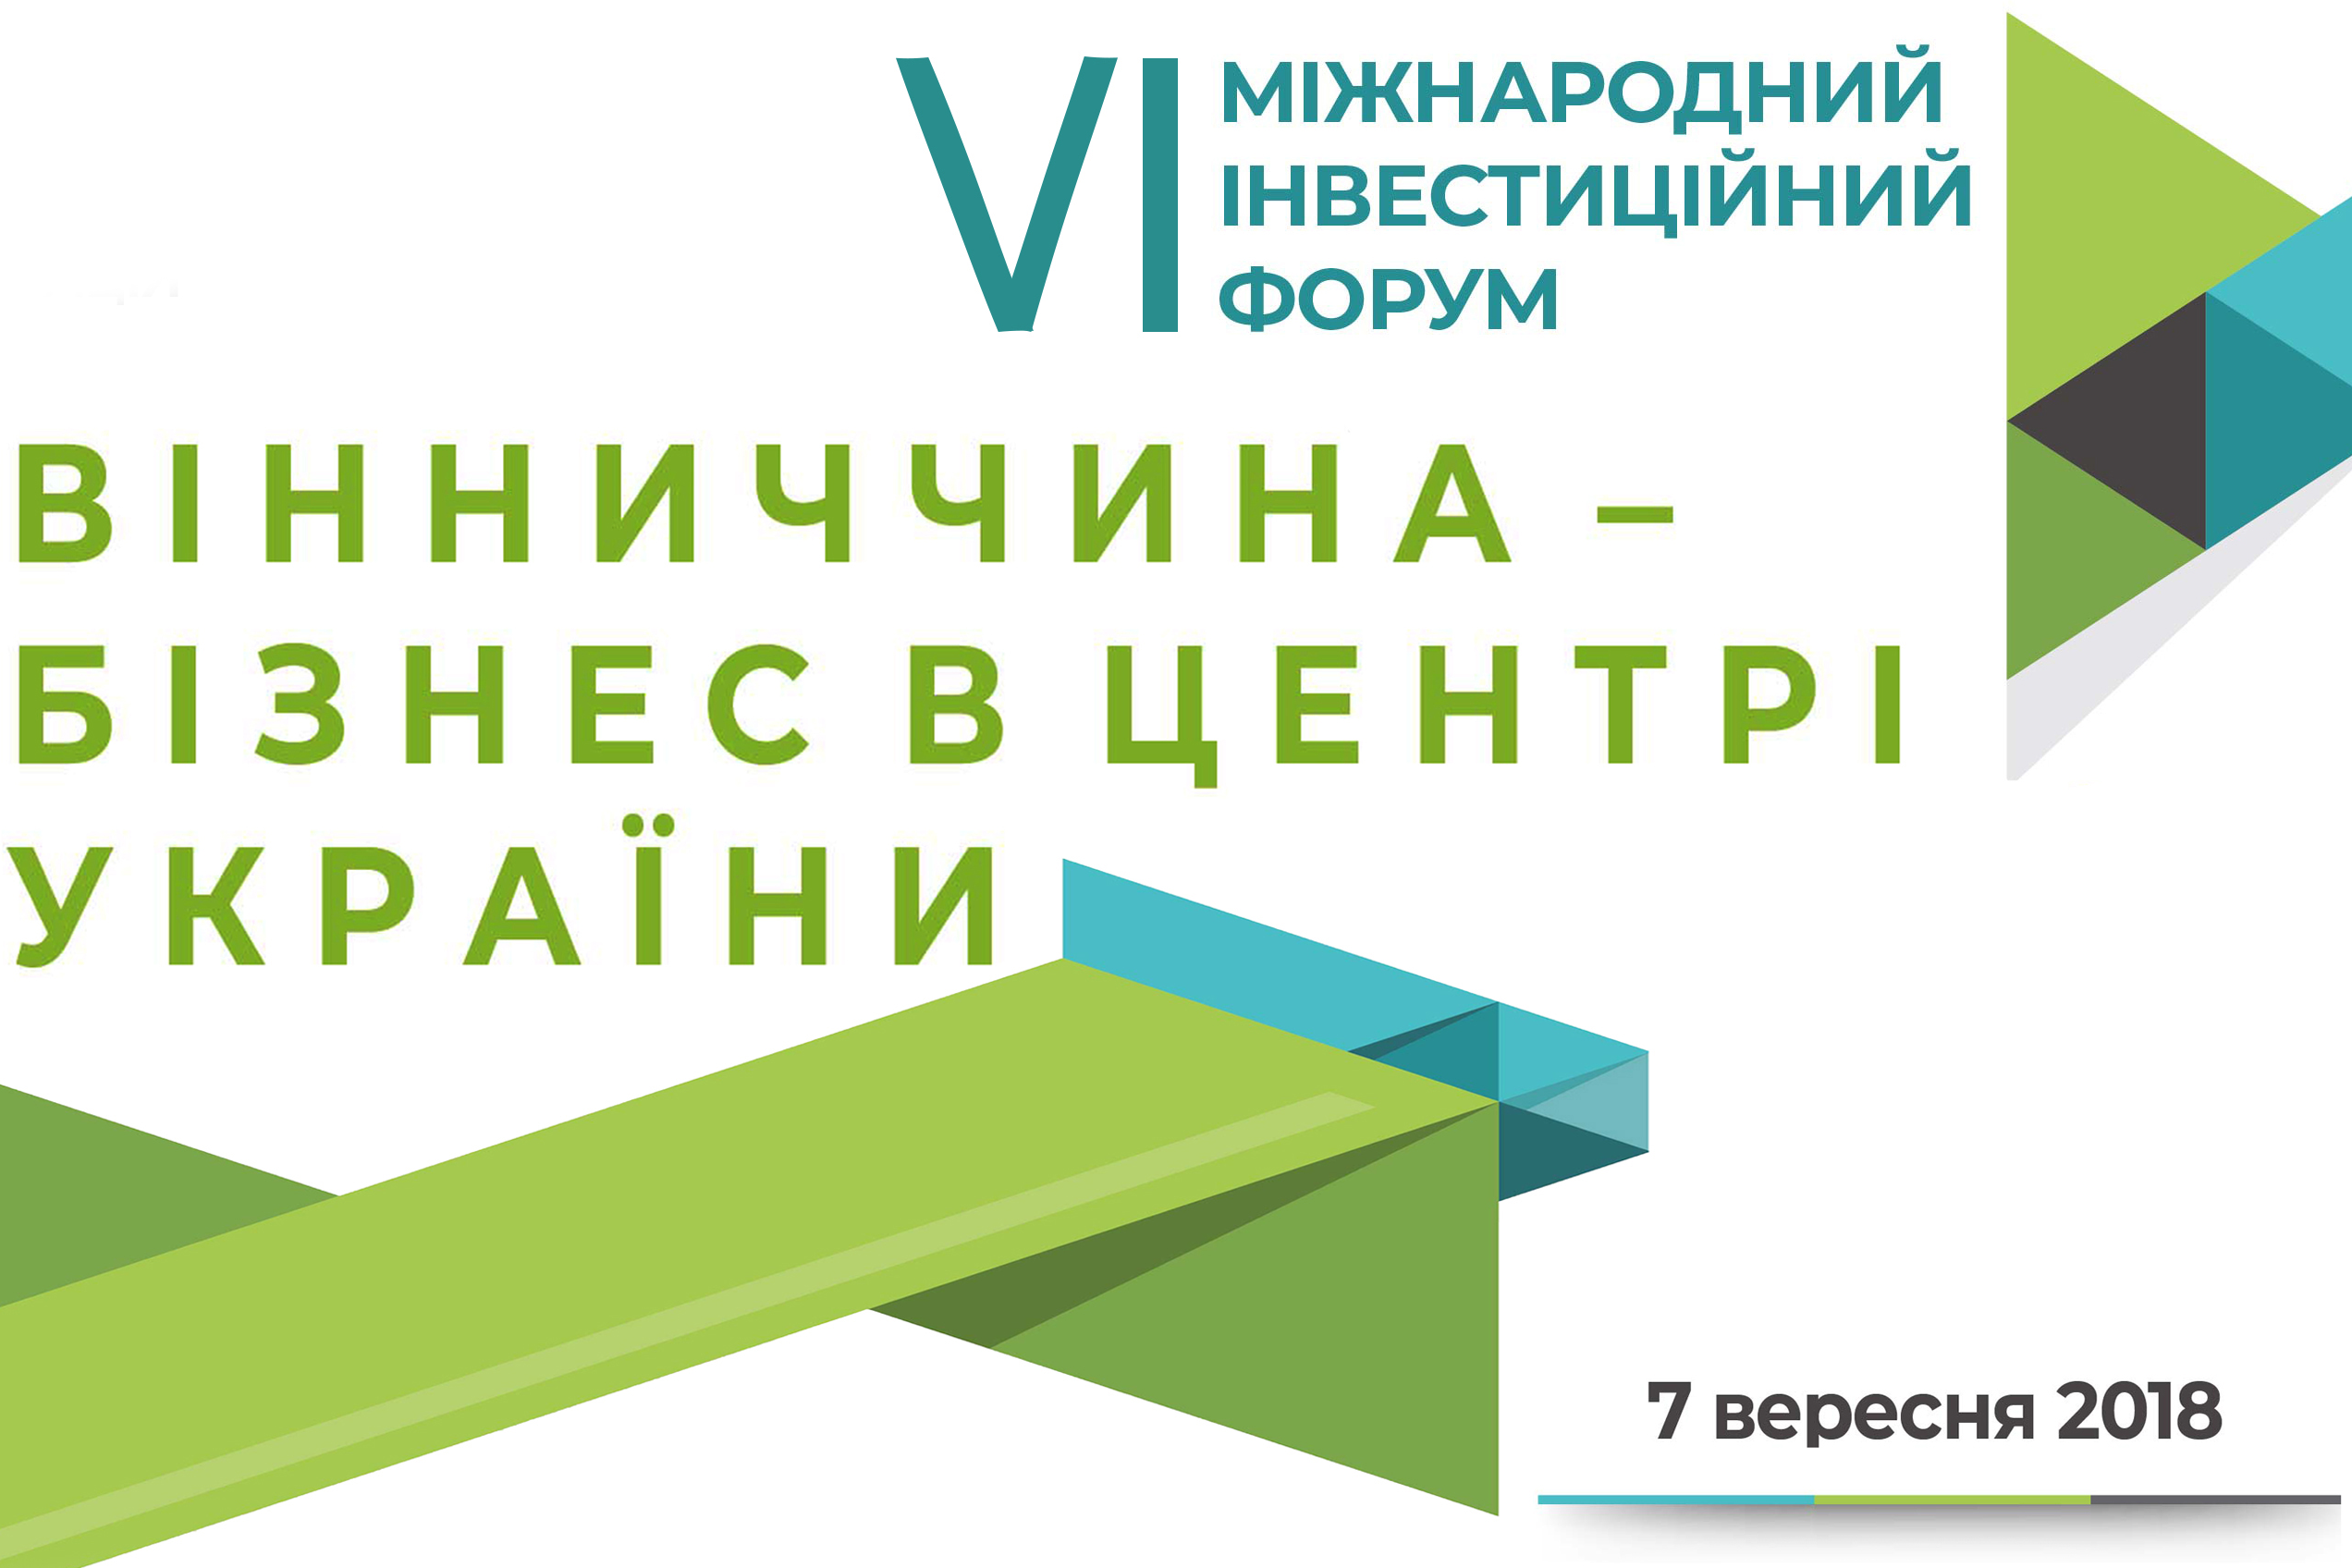 On September 7, 2018, VI International Investment Forum “Vinnytsya Region – Business in the Center of Ukraine” was held.